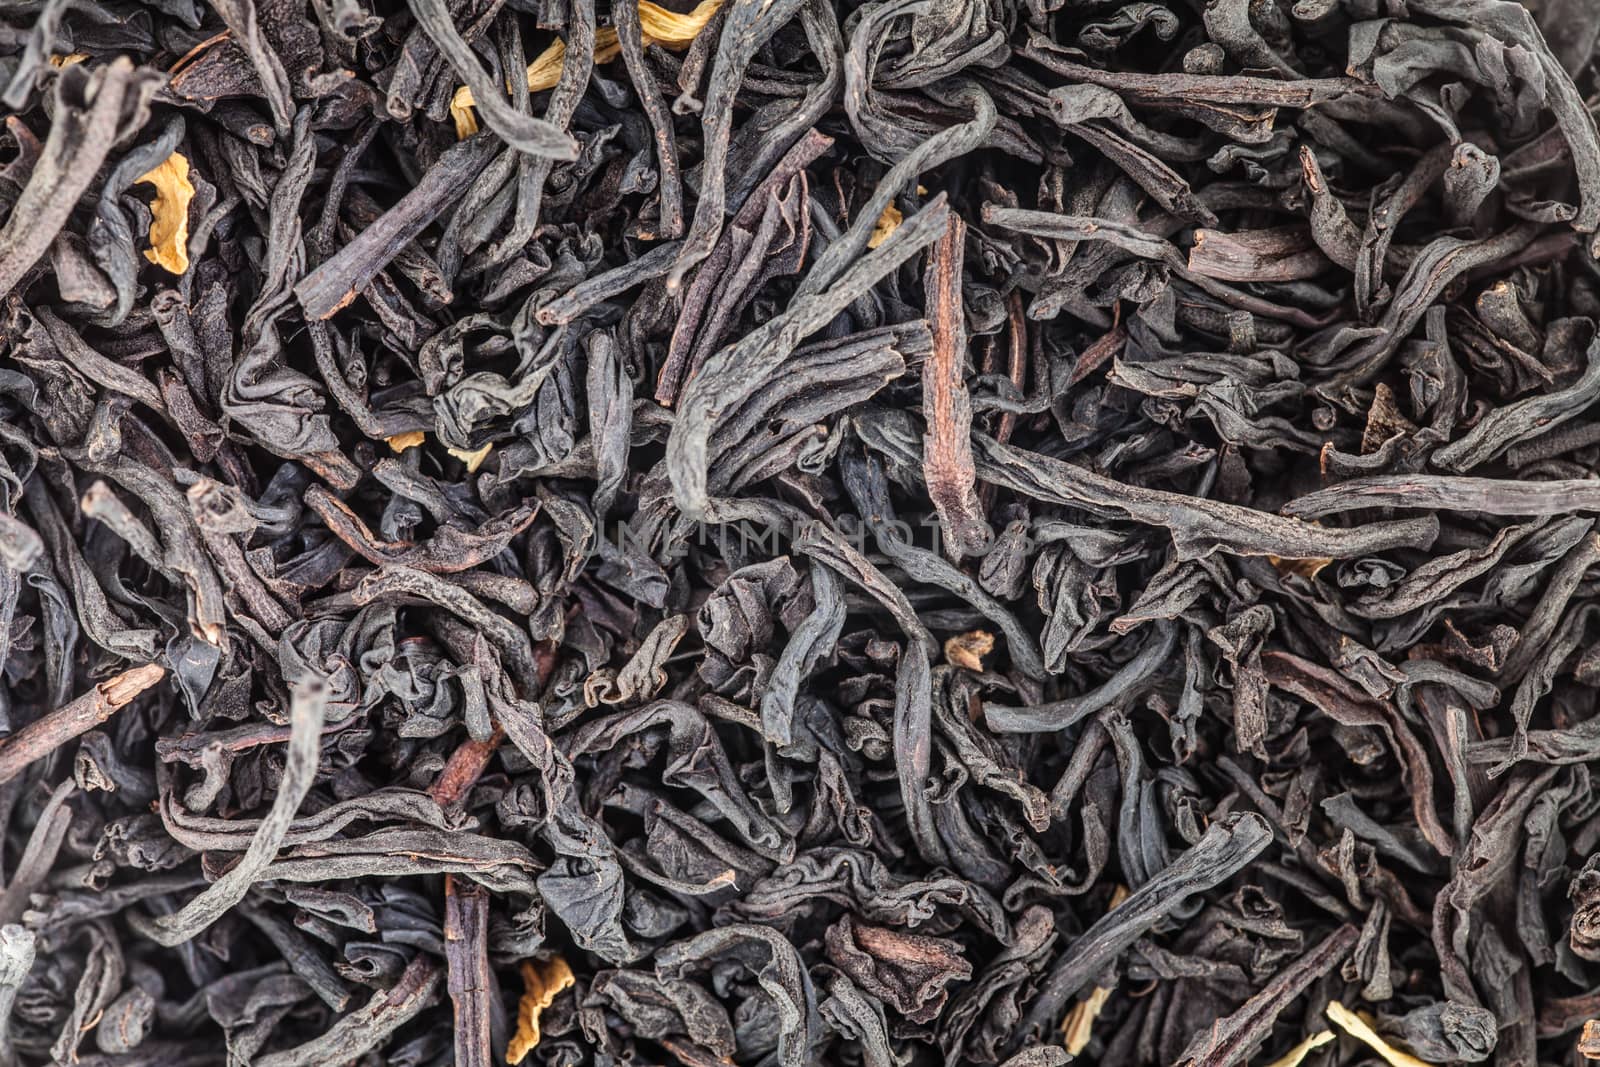 Extreme Macro Closeup of Tea Leaves - Studio Shot